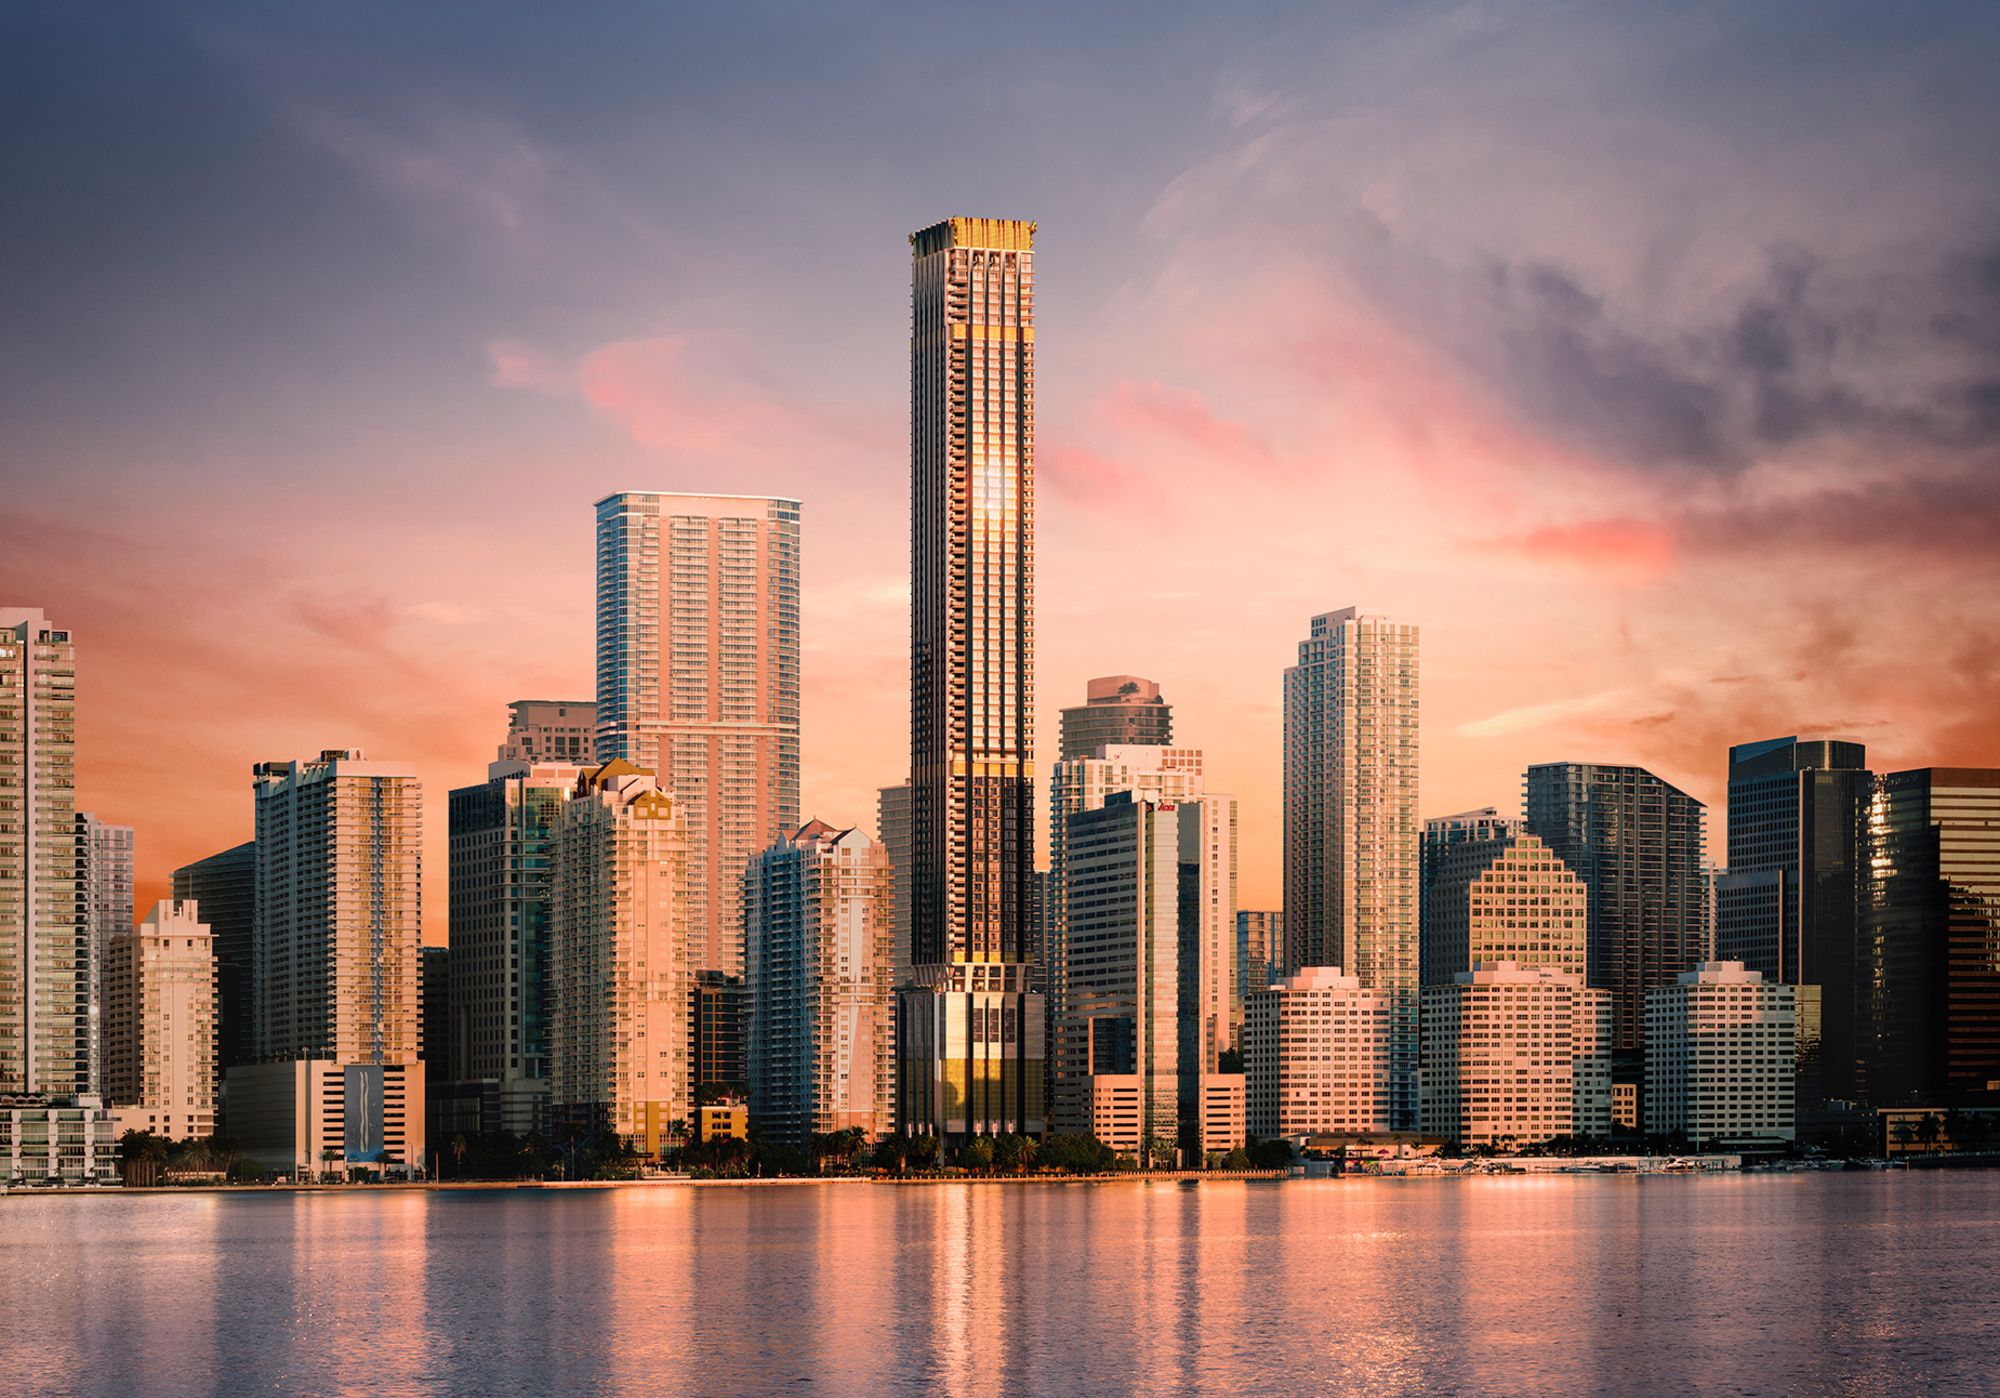 Miami's latest lavish skyscraper will be courtesy of Dolce&Gabbana